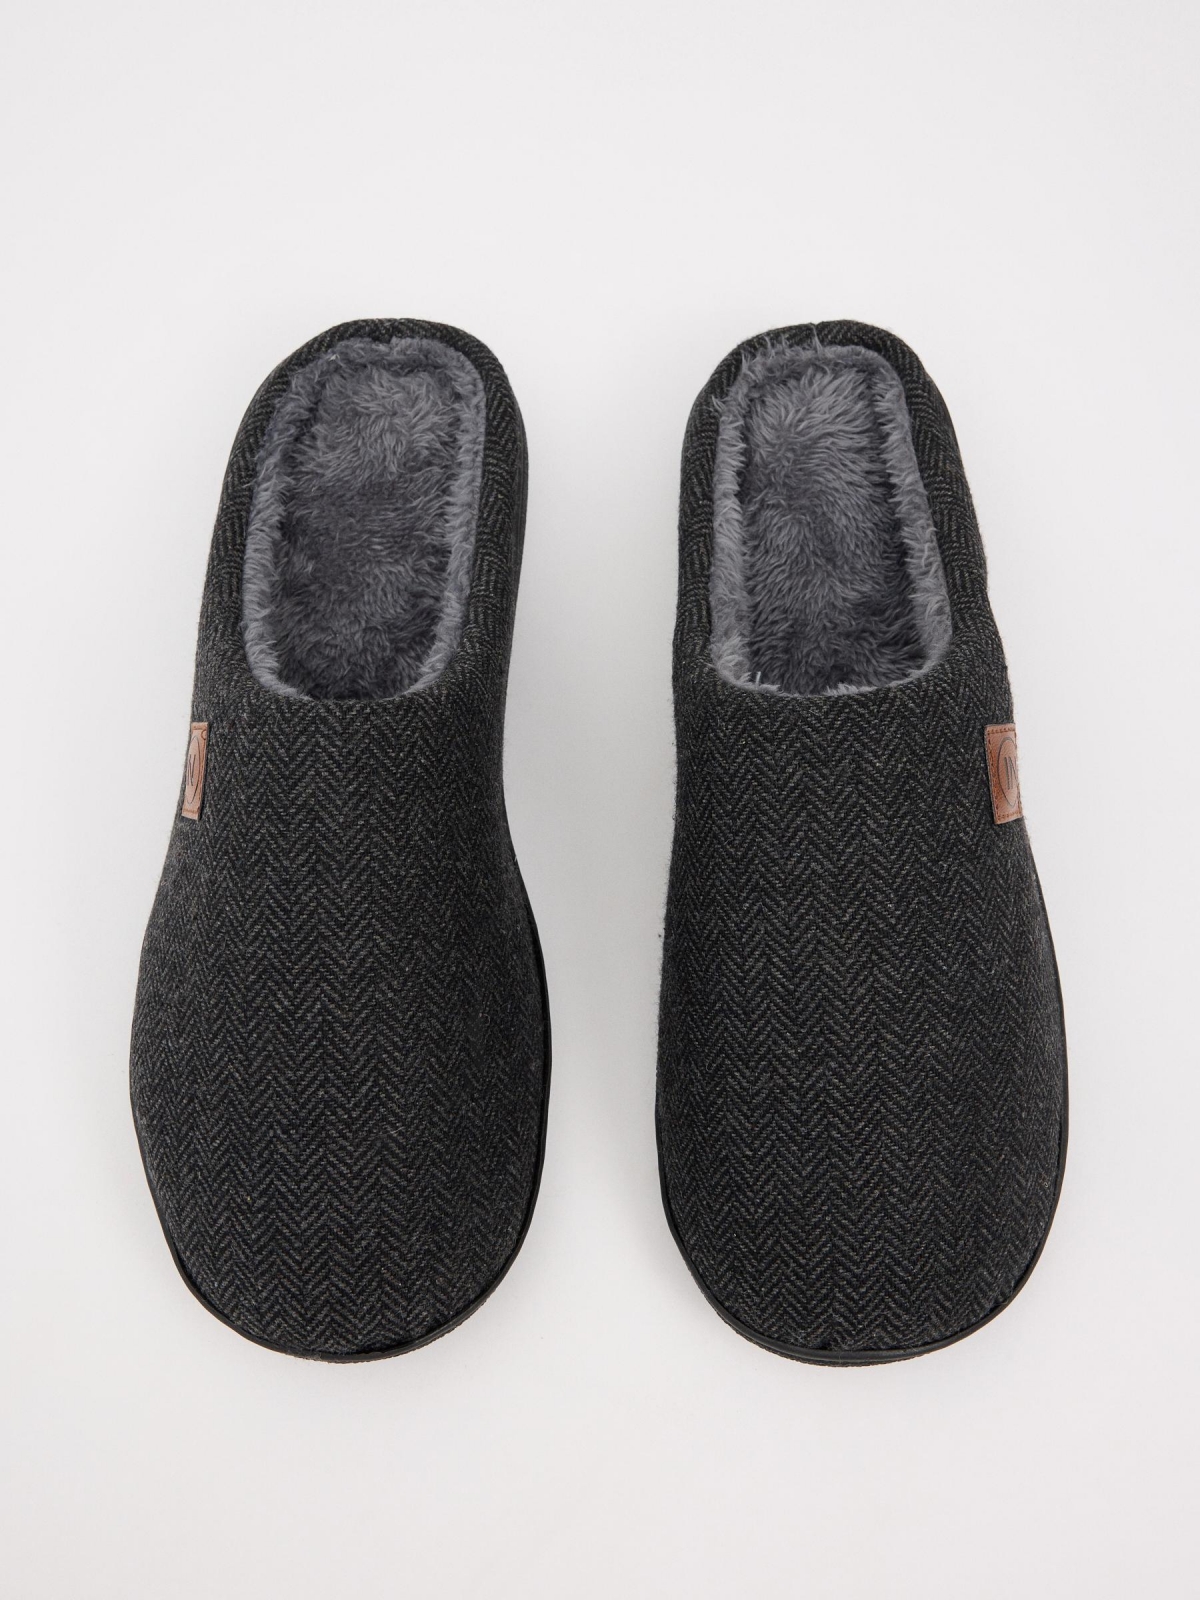 Zapatillas de casa forro pelo gris oscuro primer plano